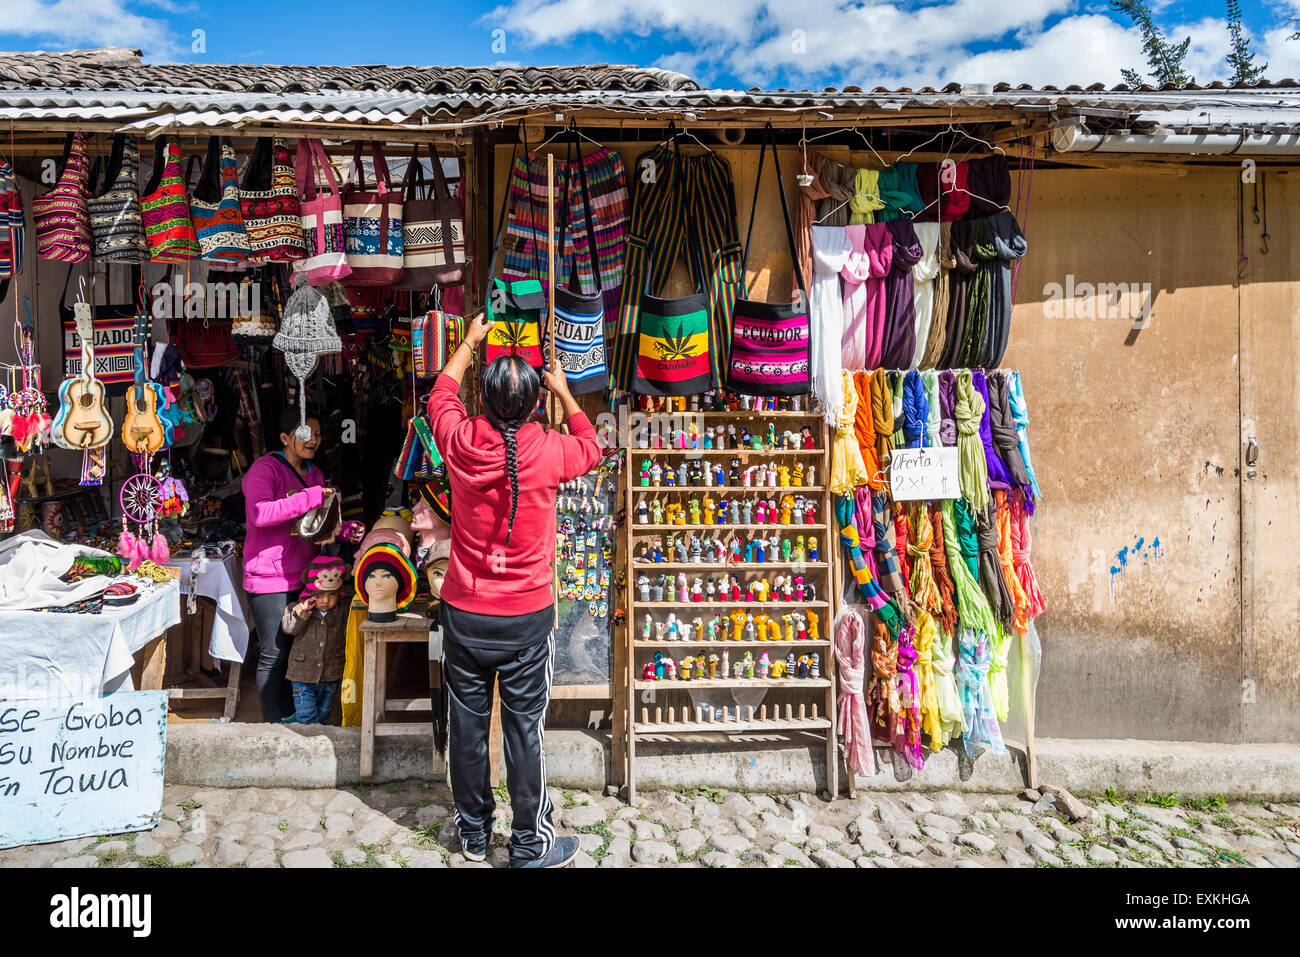 Negoziante la visualizzazione di mercanzie presso un negozio di souvenirs. Otavalo, Ecuador. Foto Stock